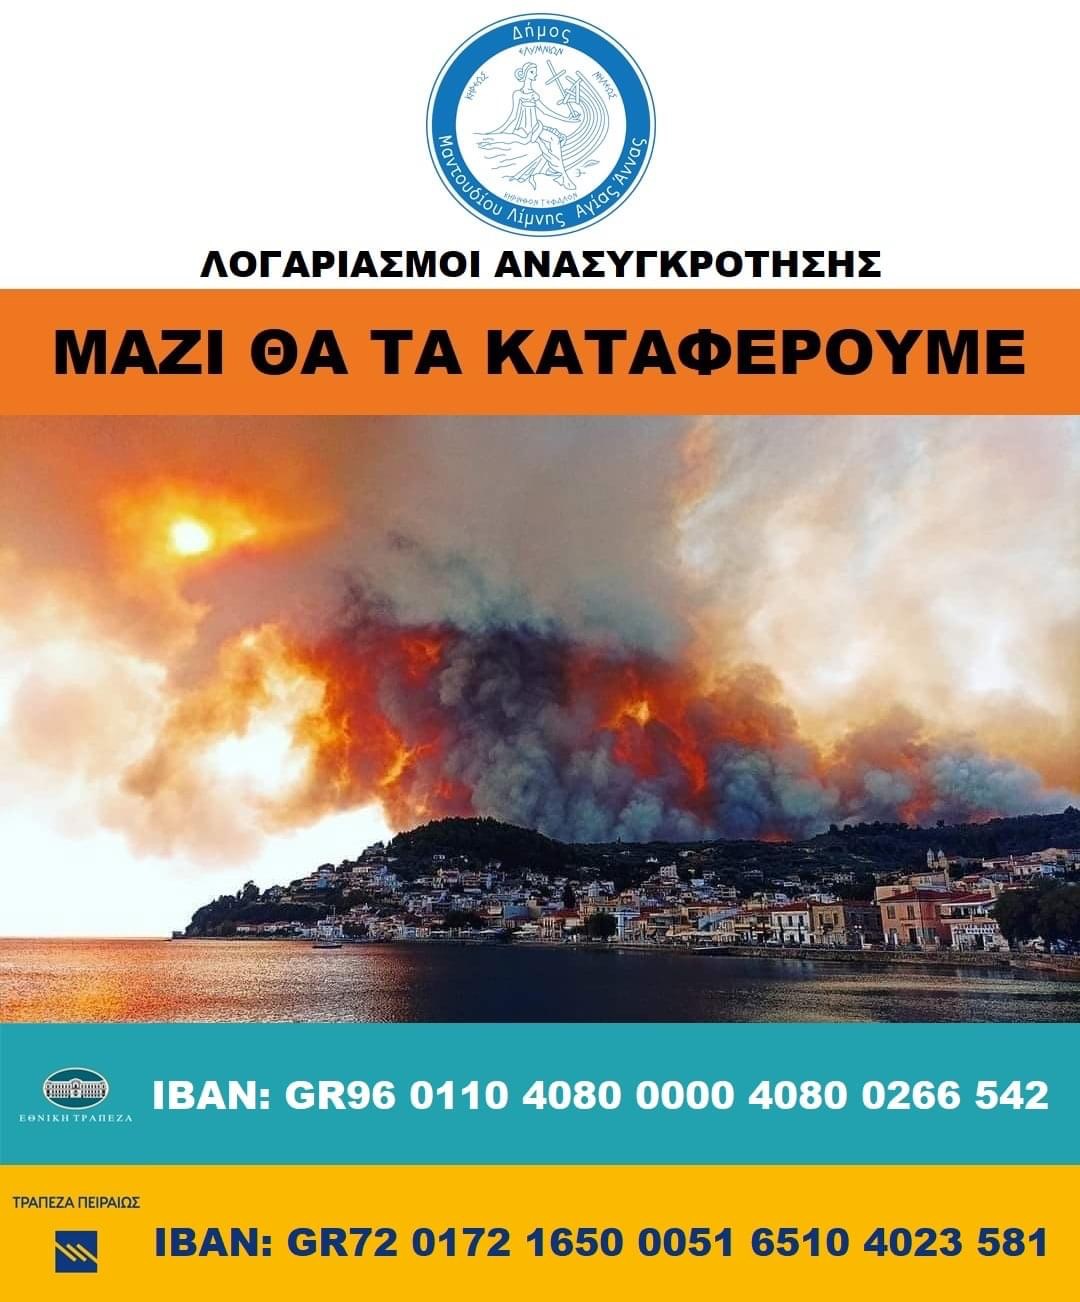 Δύο λογαριασμούς άνοιξε ο Δήμος Μαντουδίου Λίμνης Αγ. Άννας για τη στήριξη των πυρόπληκτων